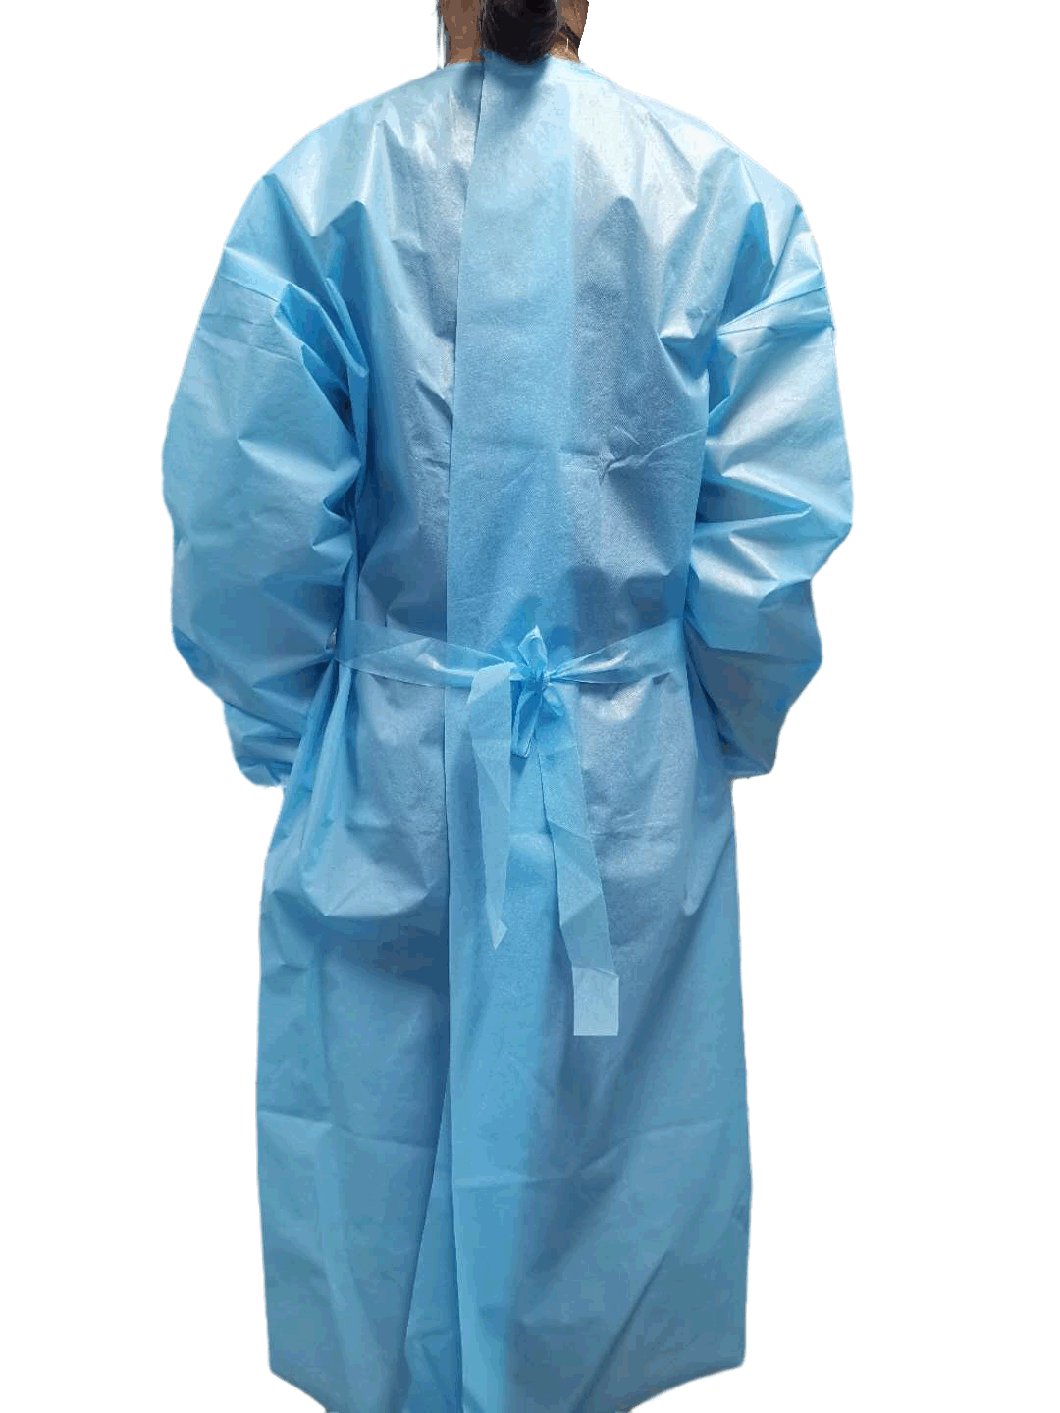 Short Sleeves Nursing Uniforms Waterproof and Easy-Breath SMS Suit Twosie